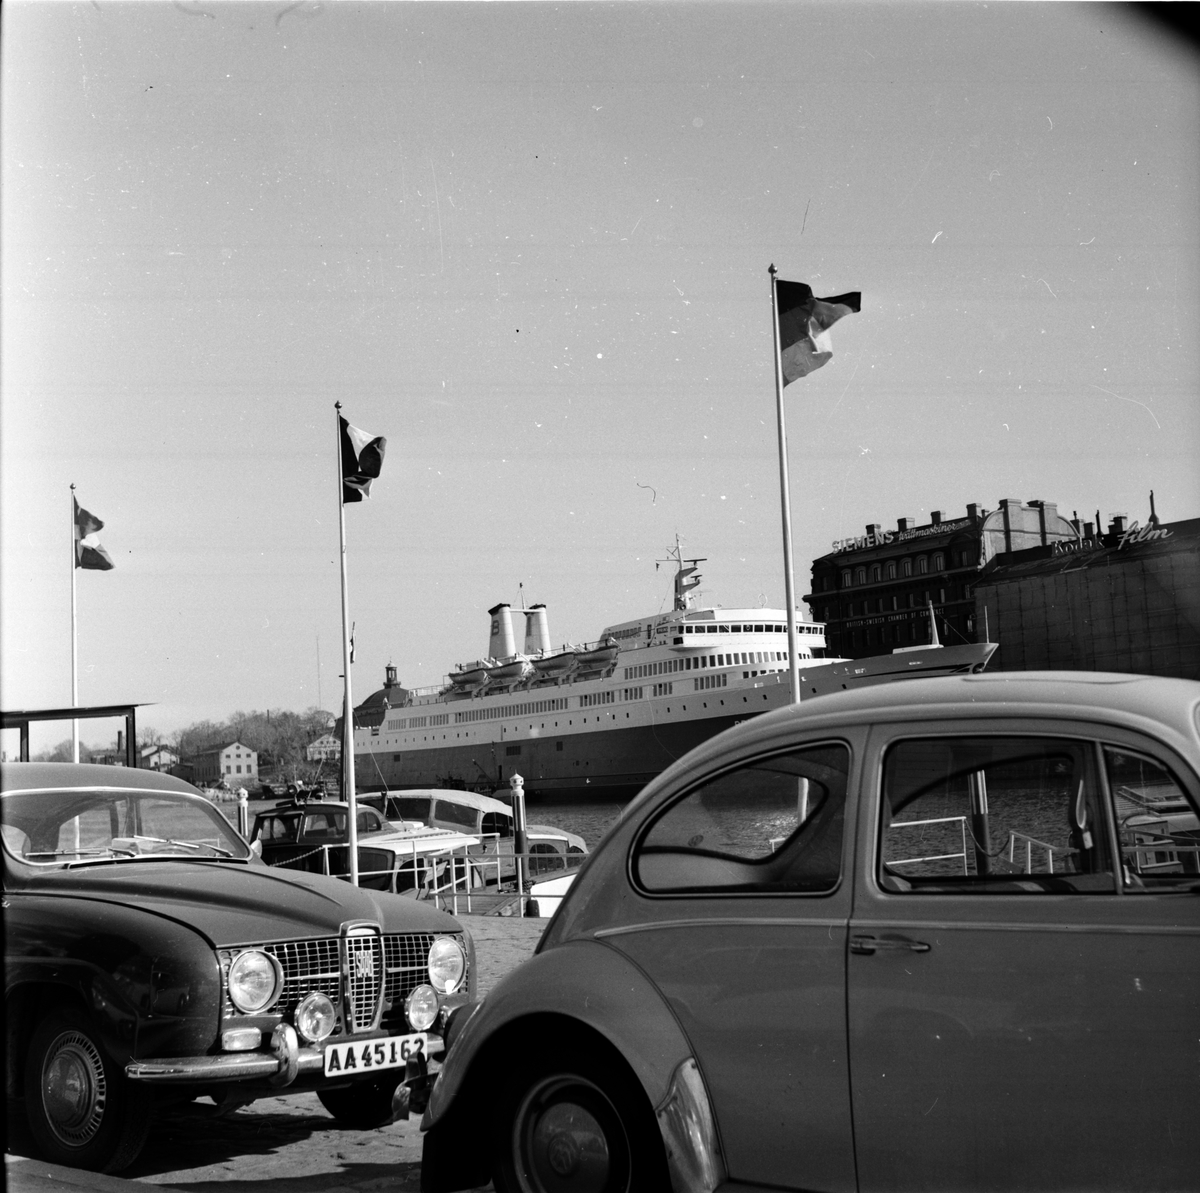 Kaj med bilar, i bakgrunden M/S Prins Hamlet. Troligtvis Stockholm.
18 Maj 1966